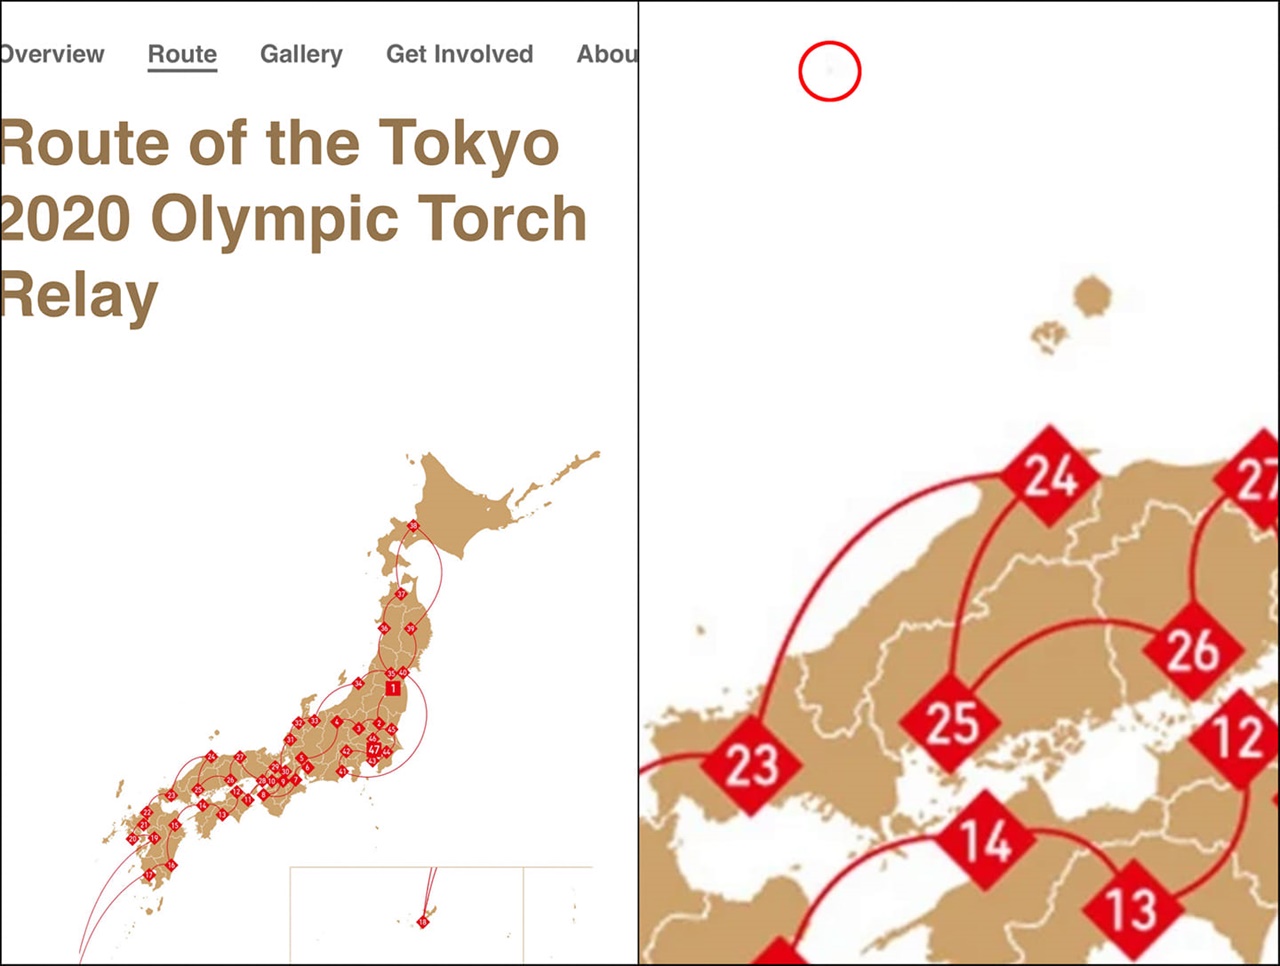 도쿄올림픽 조직위원회 홈페이지 일본 지도의 독도 표기 꼼수를 알리는 서경덕 성신여대 교수 홈페이지 갈무리.